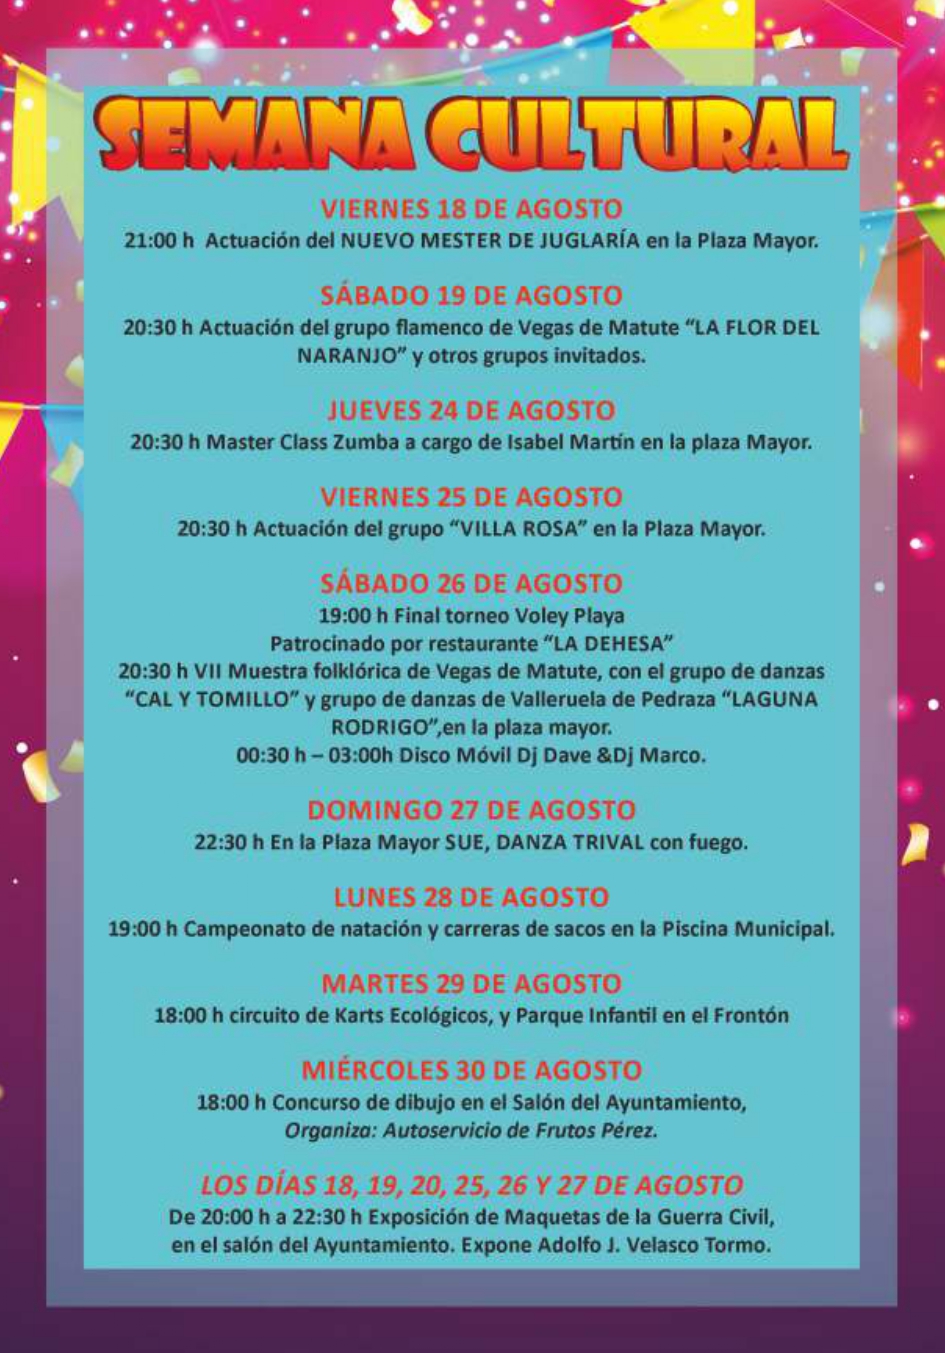 Programacion-fiestas_Vegas_de_matute-7_page-0001.jpg